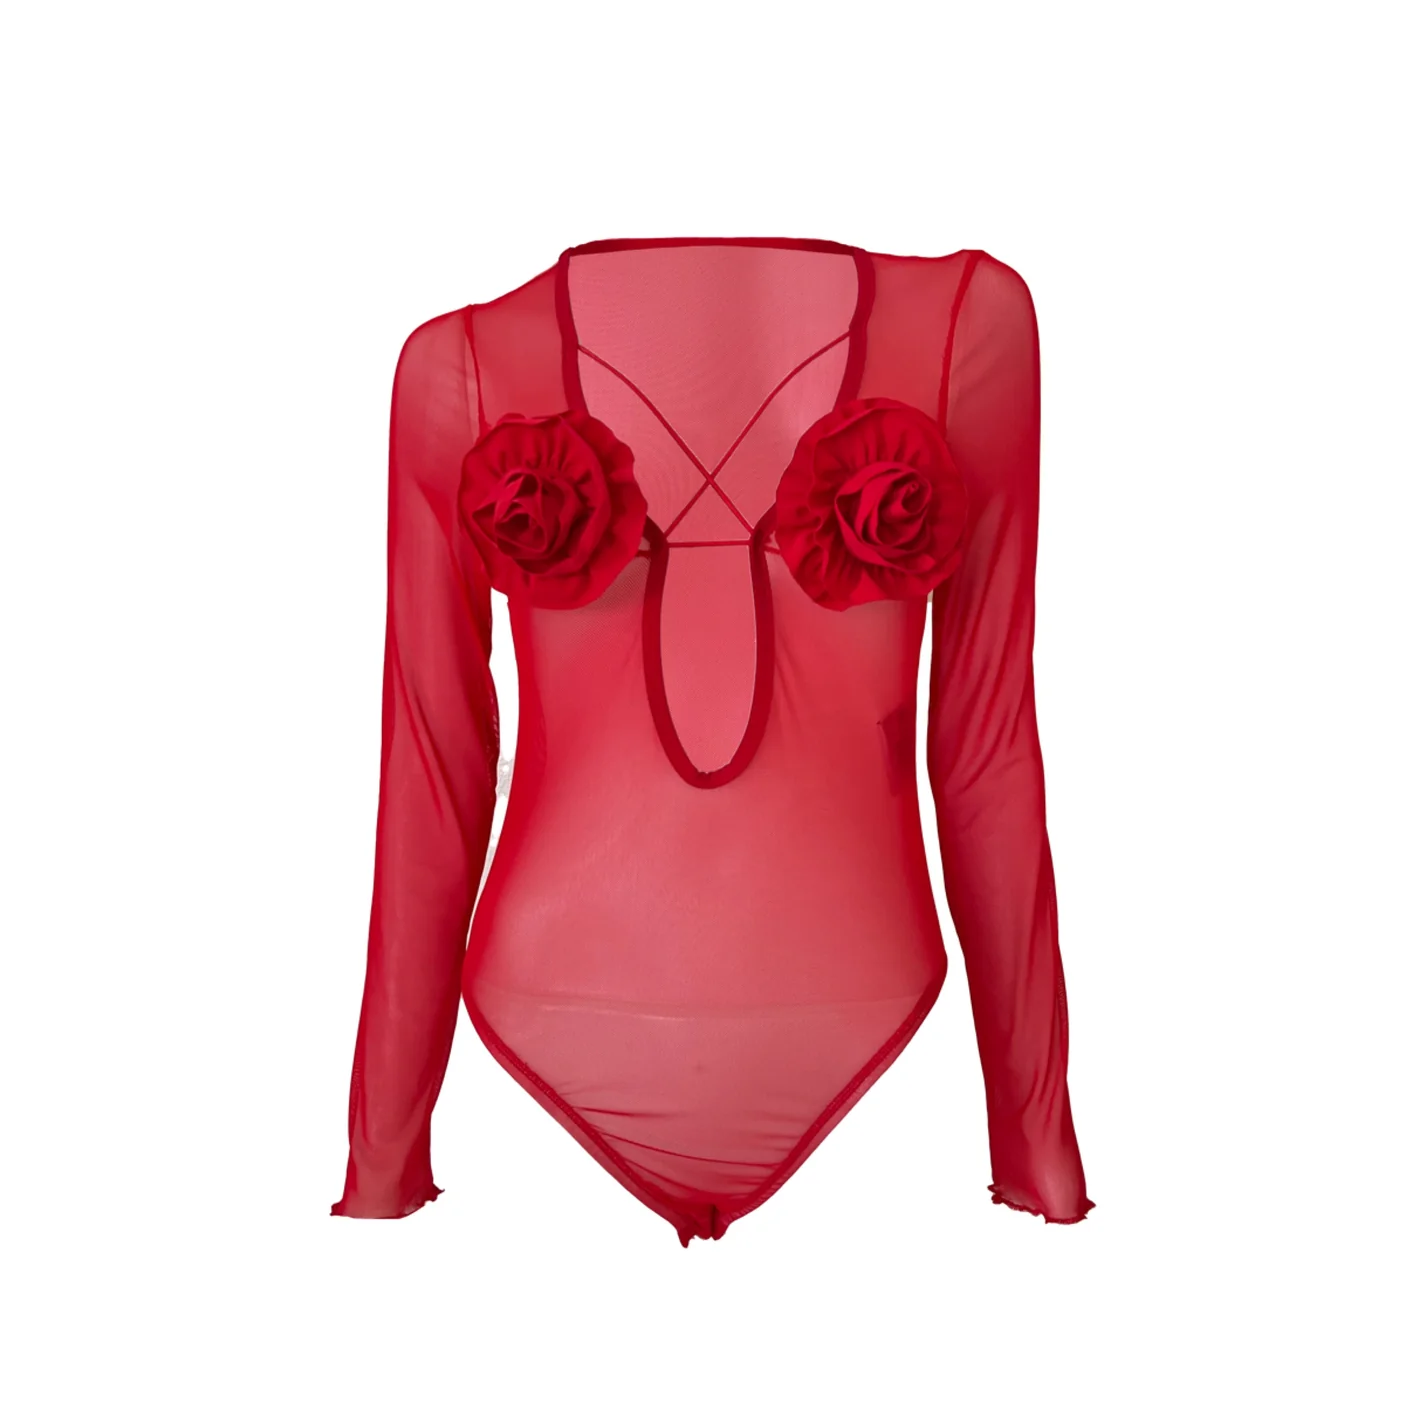 Red Roseless bodysuit